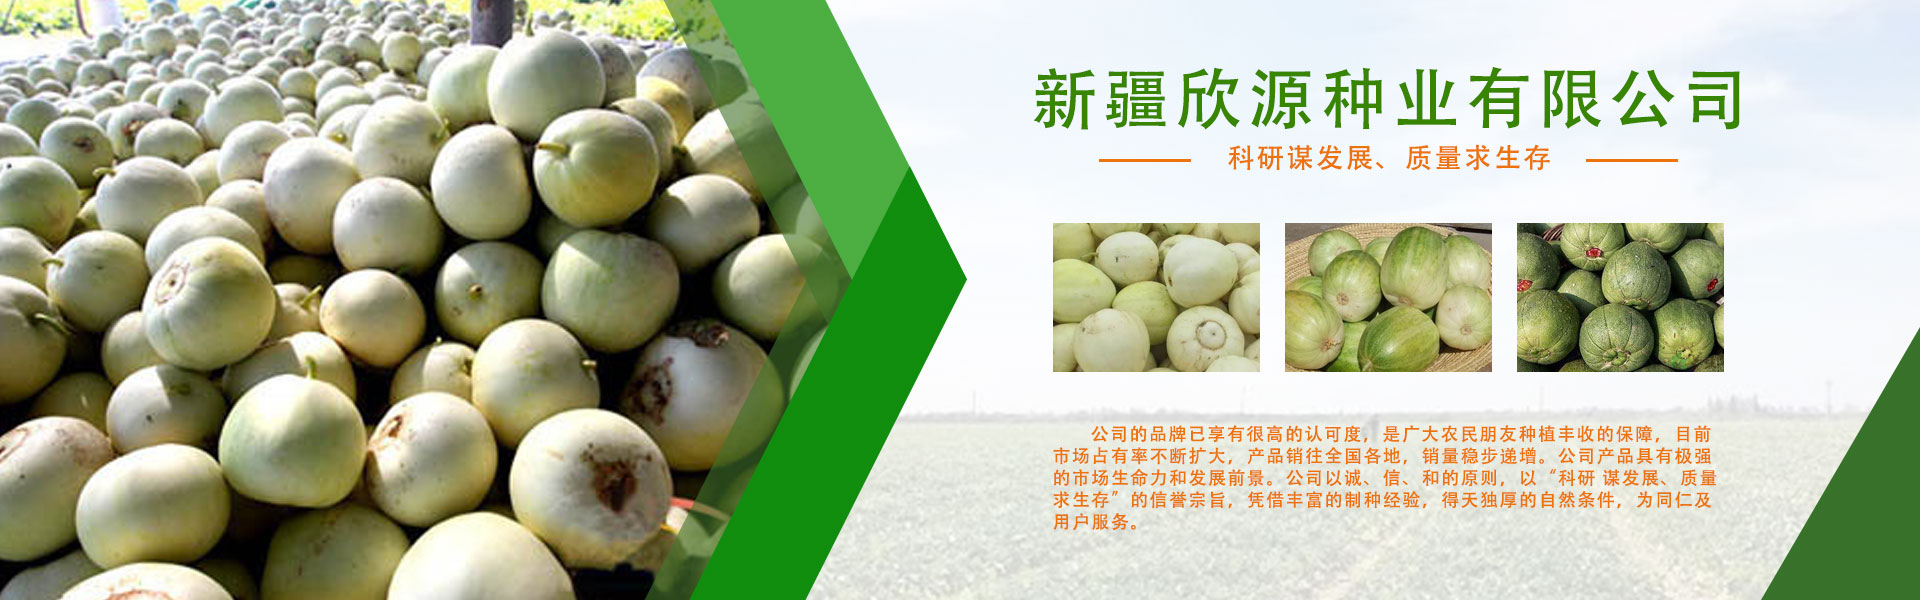 新疆哈密瓜種子,新疆哈密瓜種子公司,哈密瓜種子價格